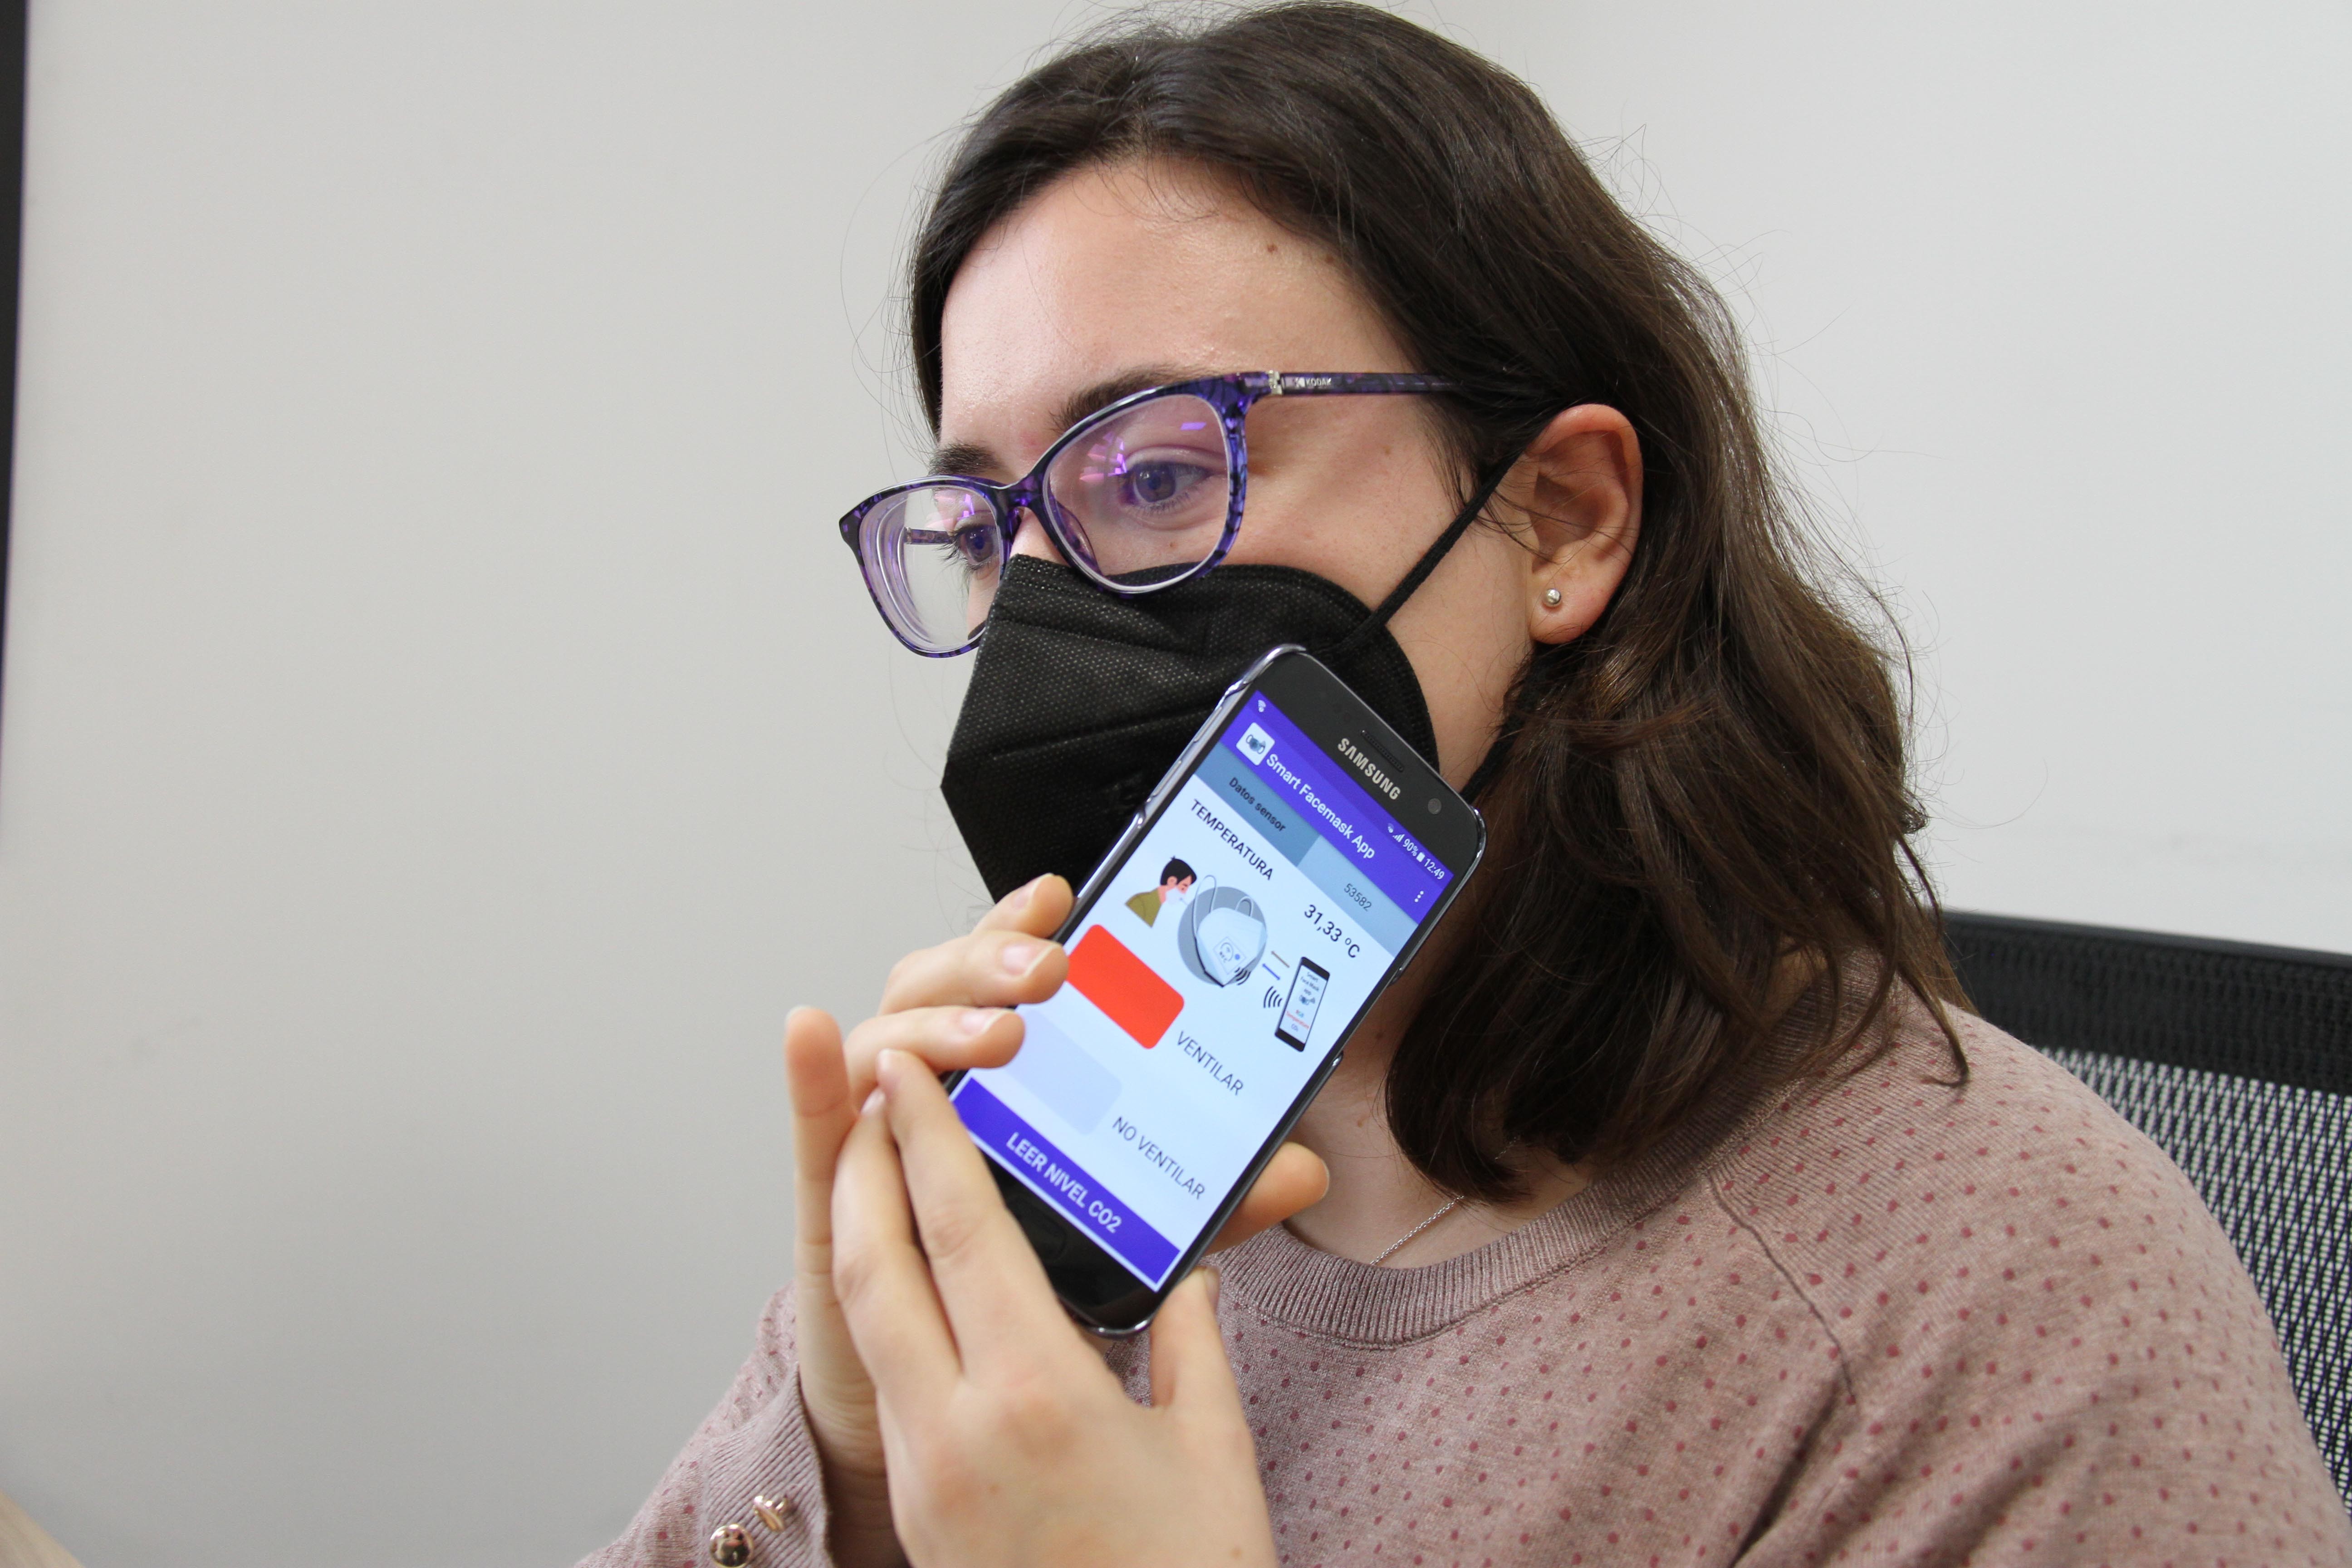 Pesquisadores inserem na máscara PFF2 uma etiqueta que não requer baterias, pois é alimentada por tecnologia sem fio via smartphone (Foto: Universidad de Granada)